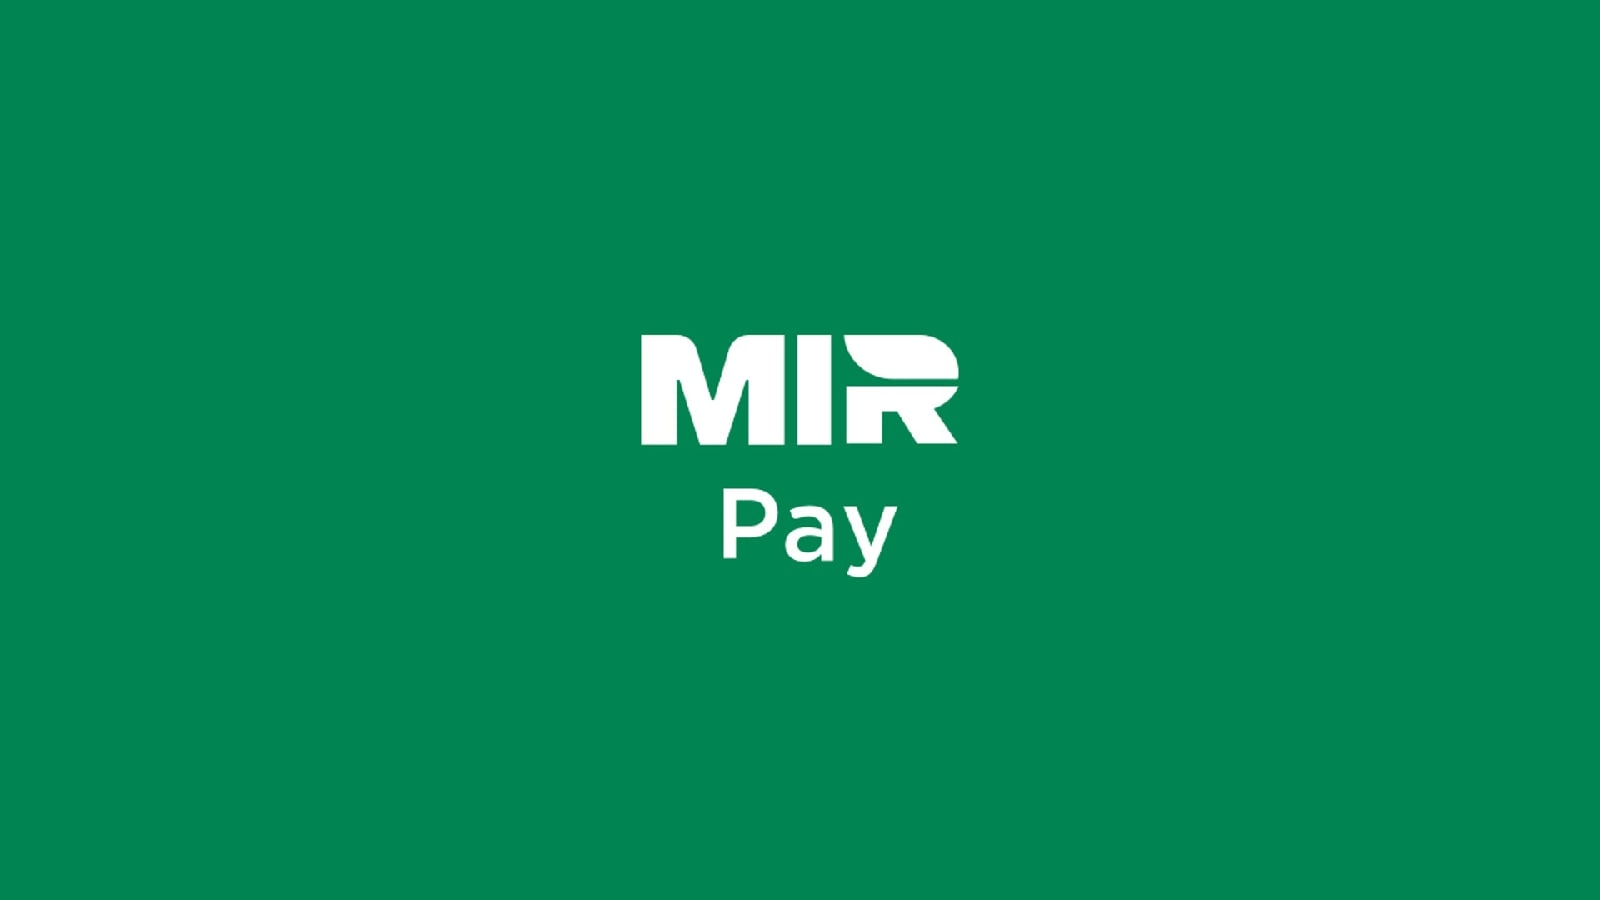 По данным аналитики, что вполне логично, количество пользователей Mir Pay этим летом выросло более чем в 20 раз по сравнению с летом прошлого года. 